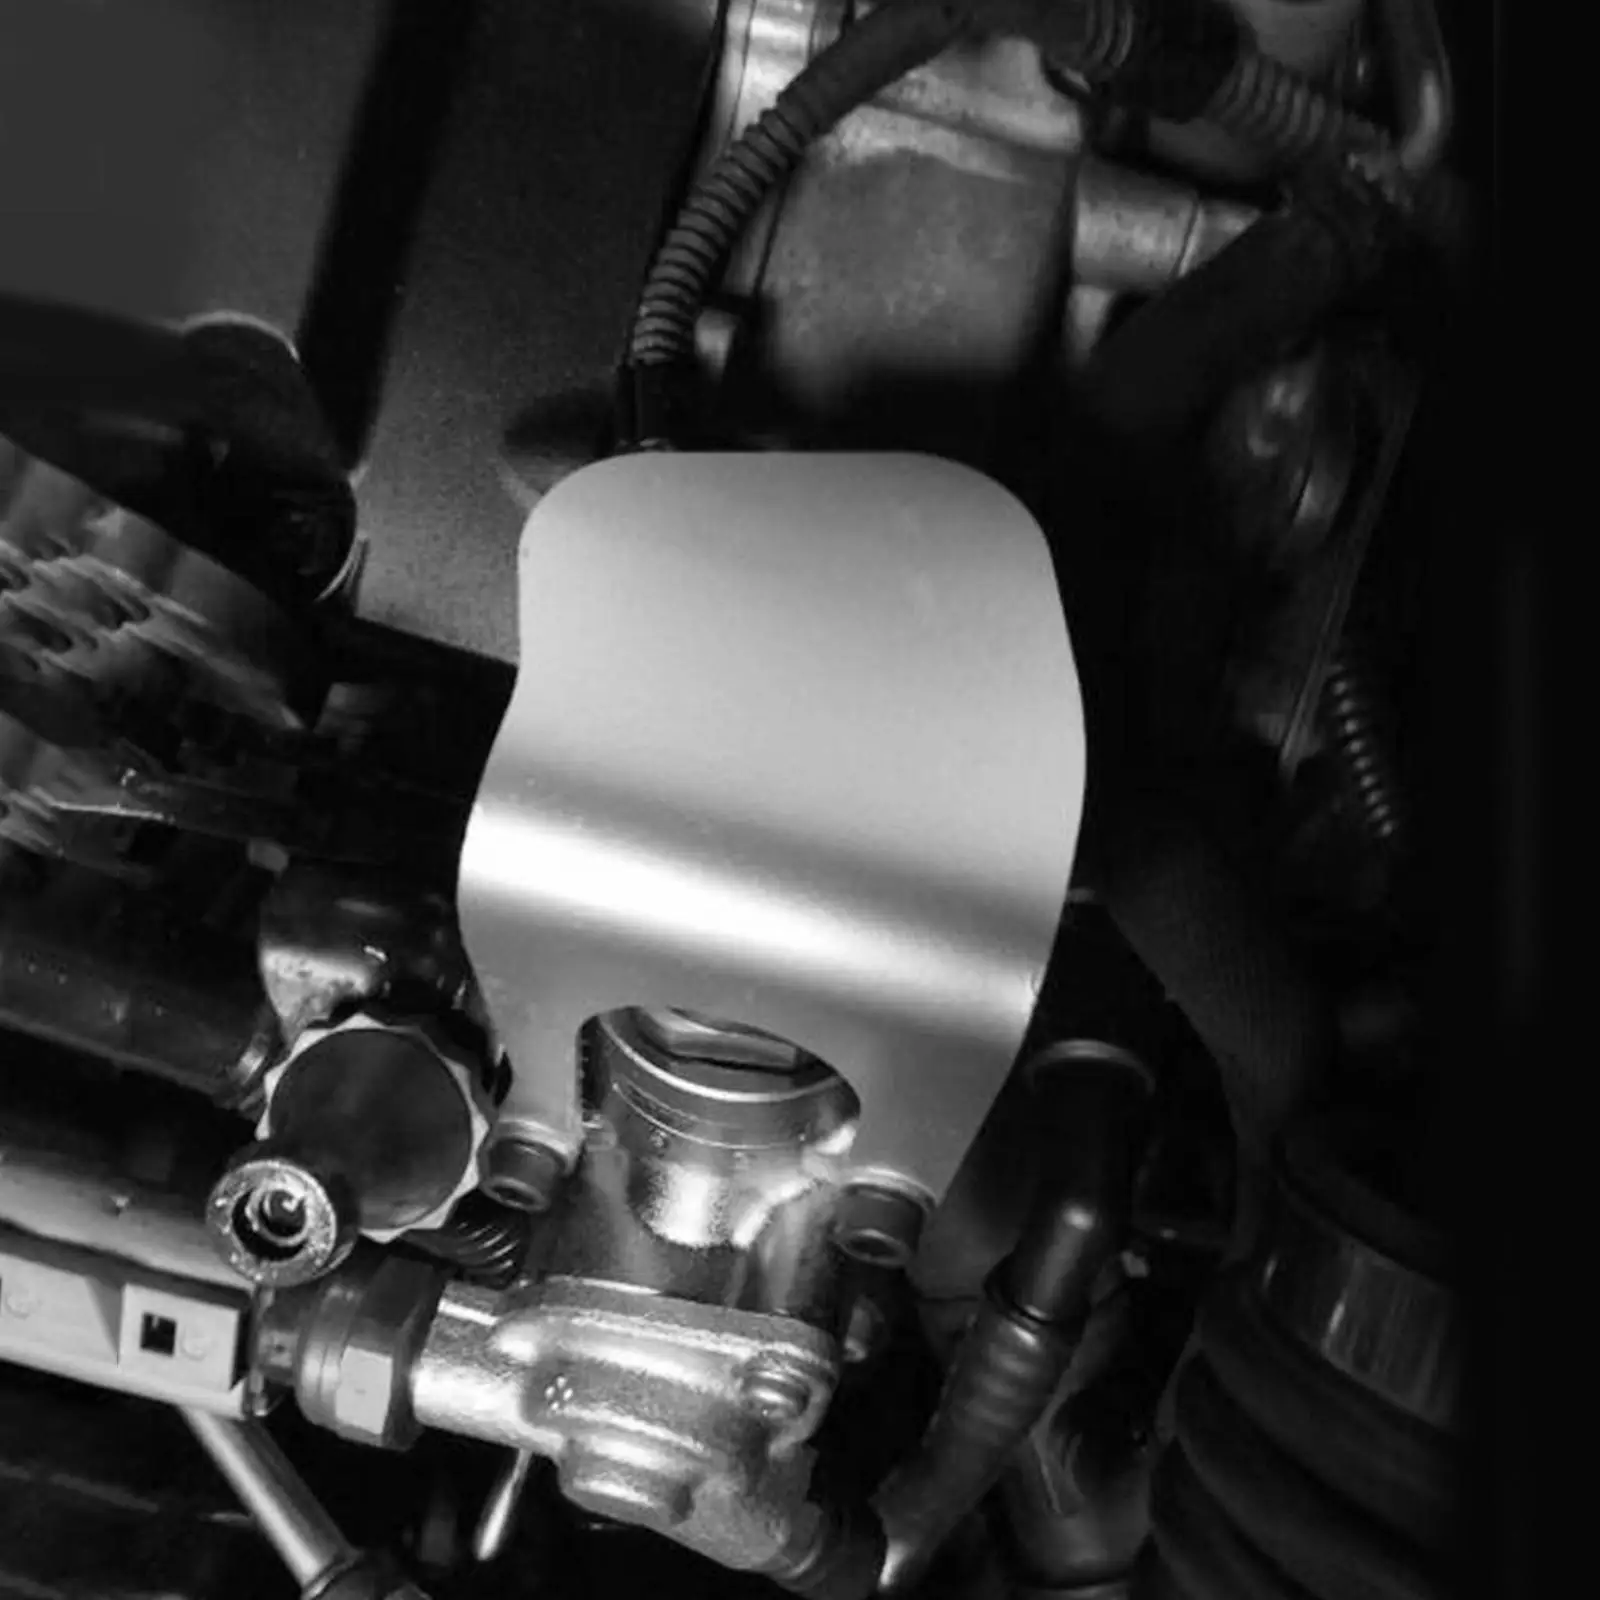 Hpfp Sensor Guard Protection High Pressure Vehicle Parts Iron Black Sensor Cover Fit for Audi A3 2.0 Tfsi AL0134 Fuel Pump